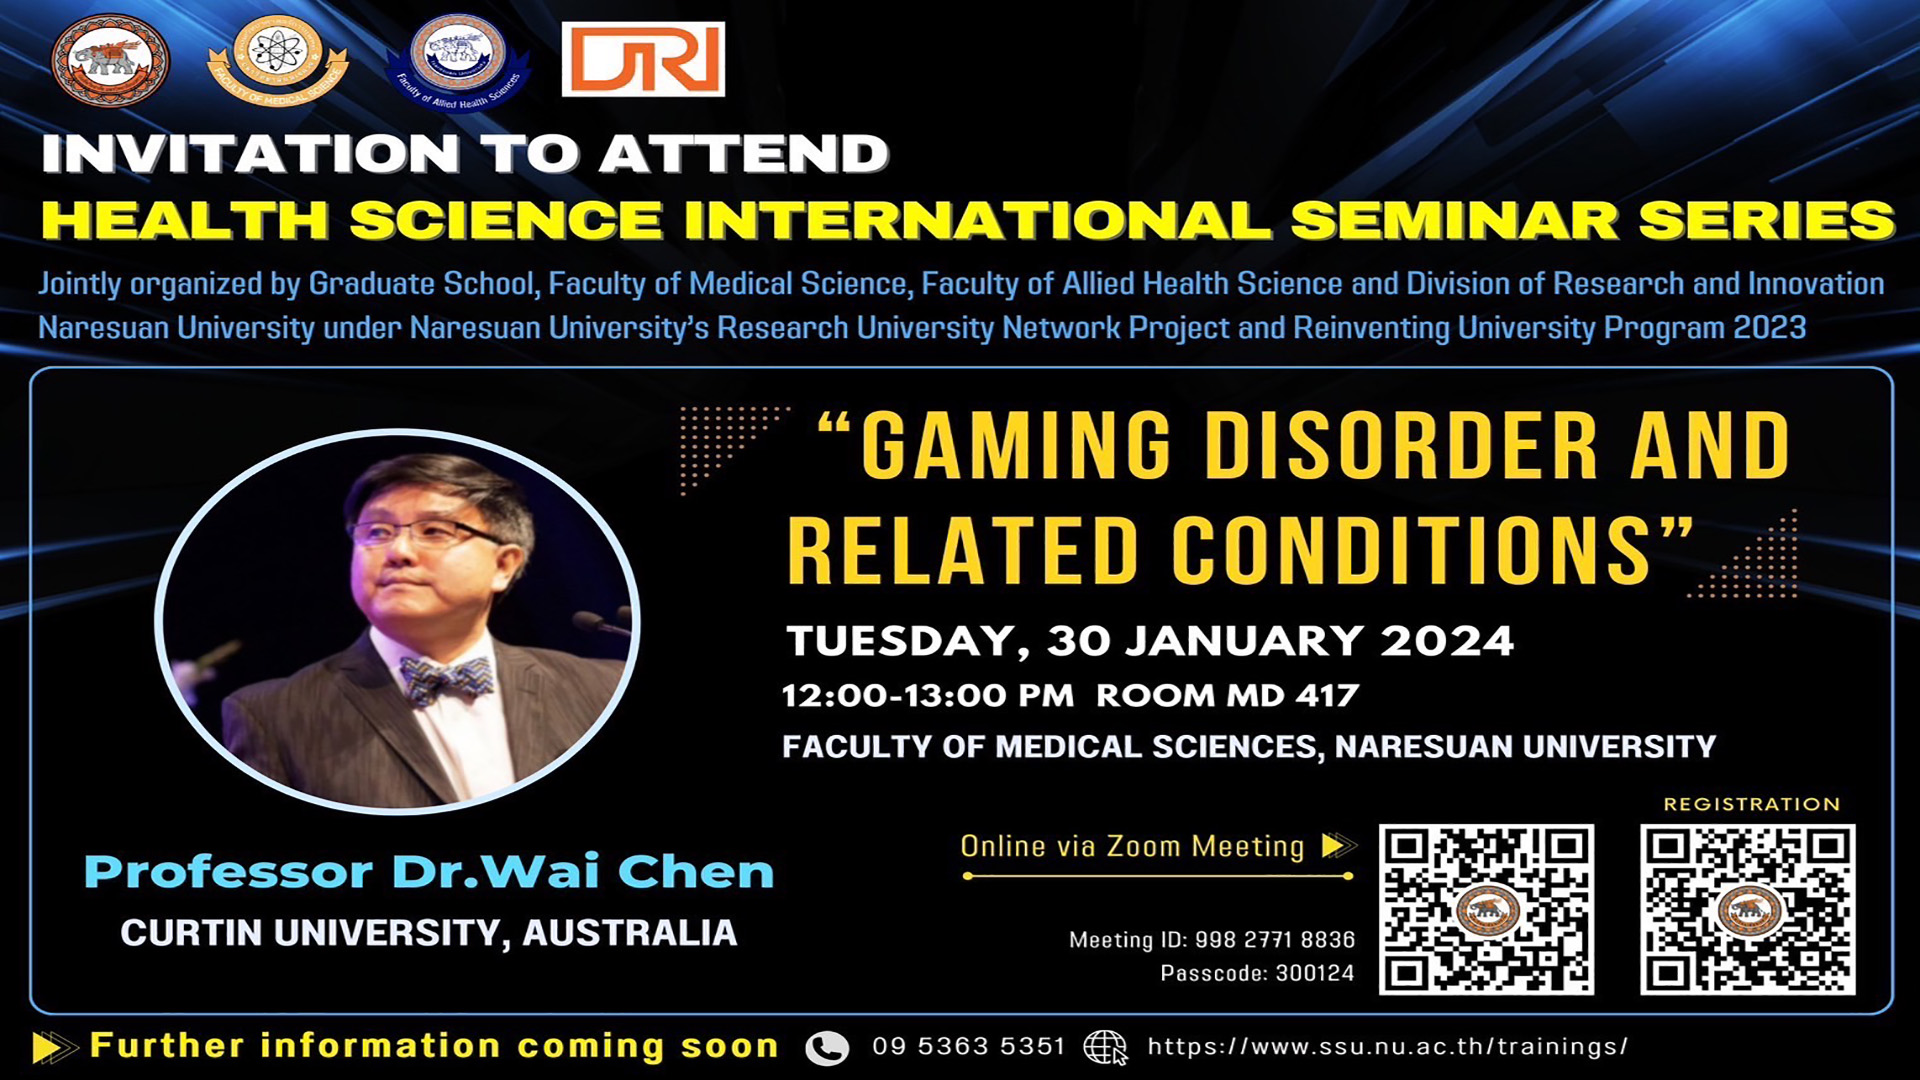 ขอเชิญร่วมกิจกรรม Health Science International Seminar Series” หัวข้อ “Gaming Disorder and Related Conditions